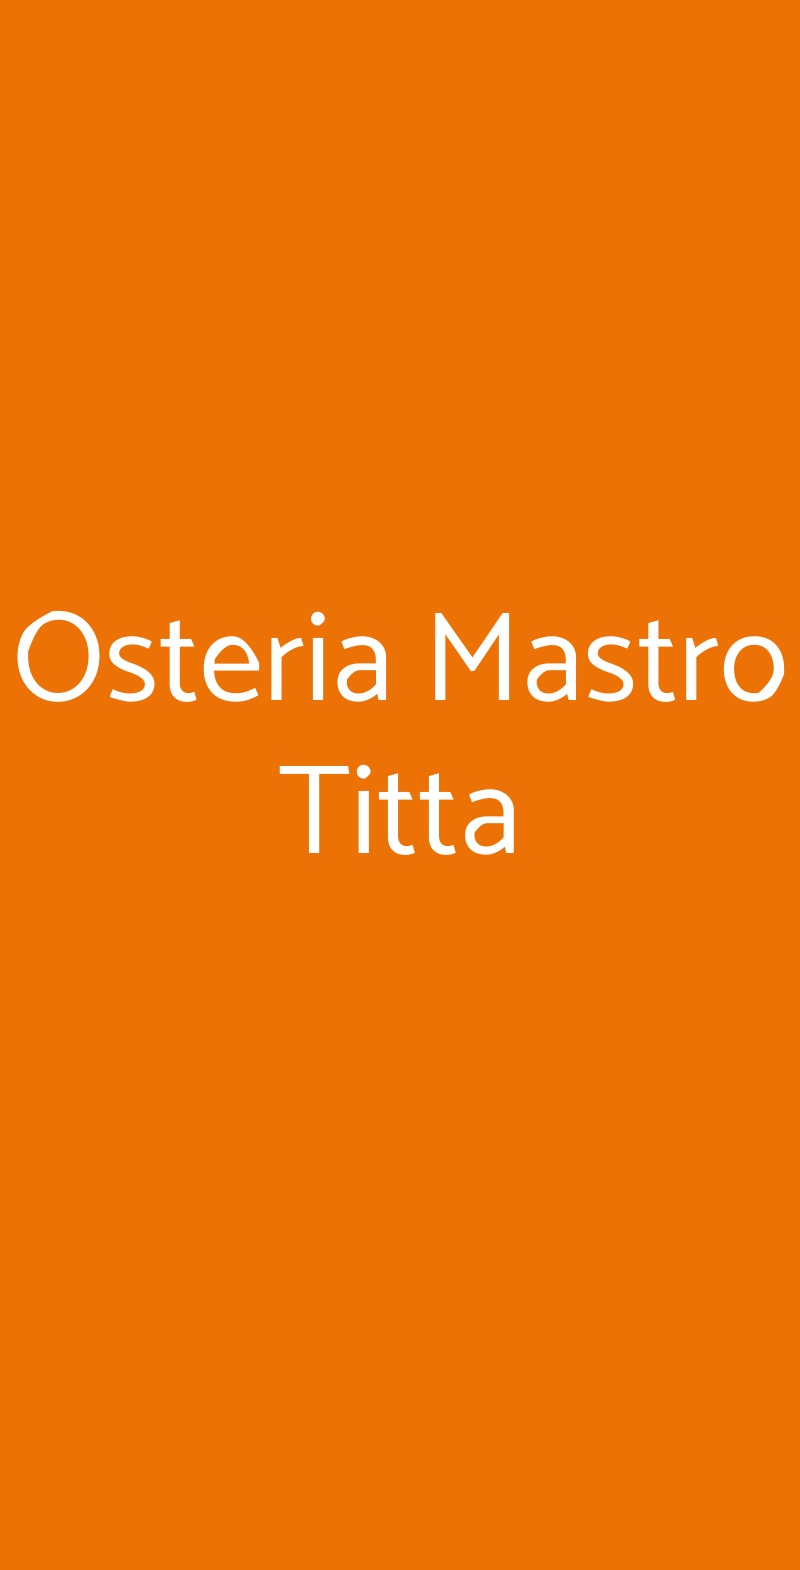 Osteria Mastro Titta Ariccia menù 1 pagina